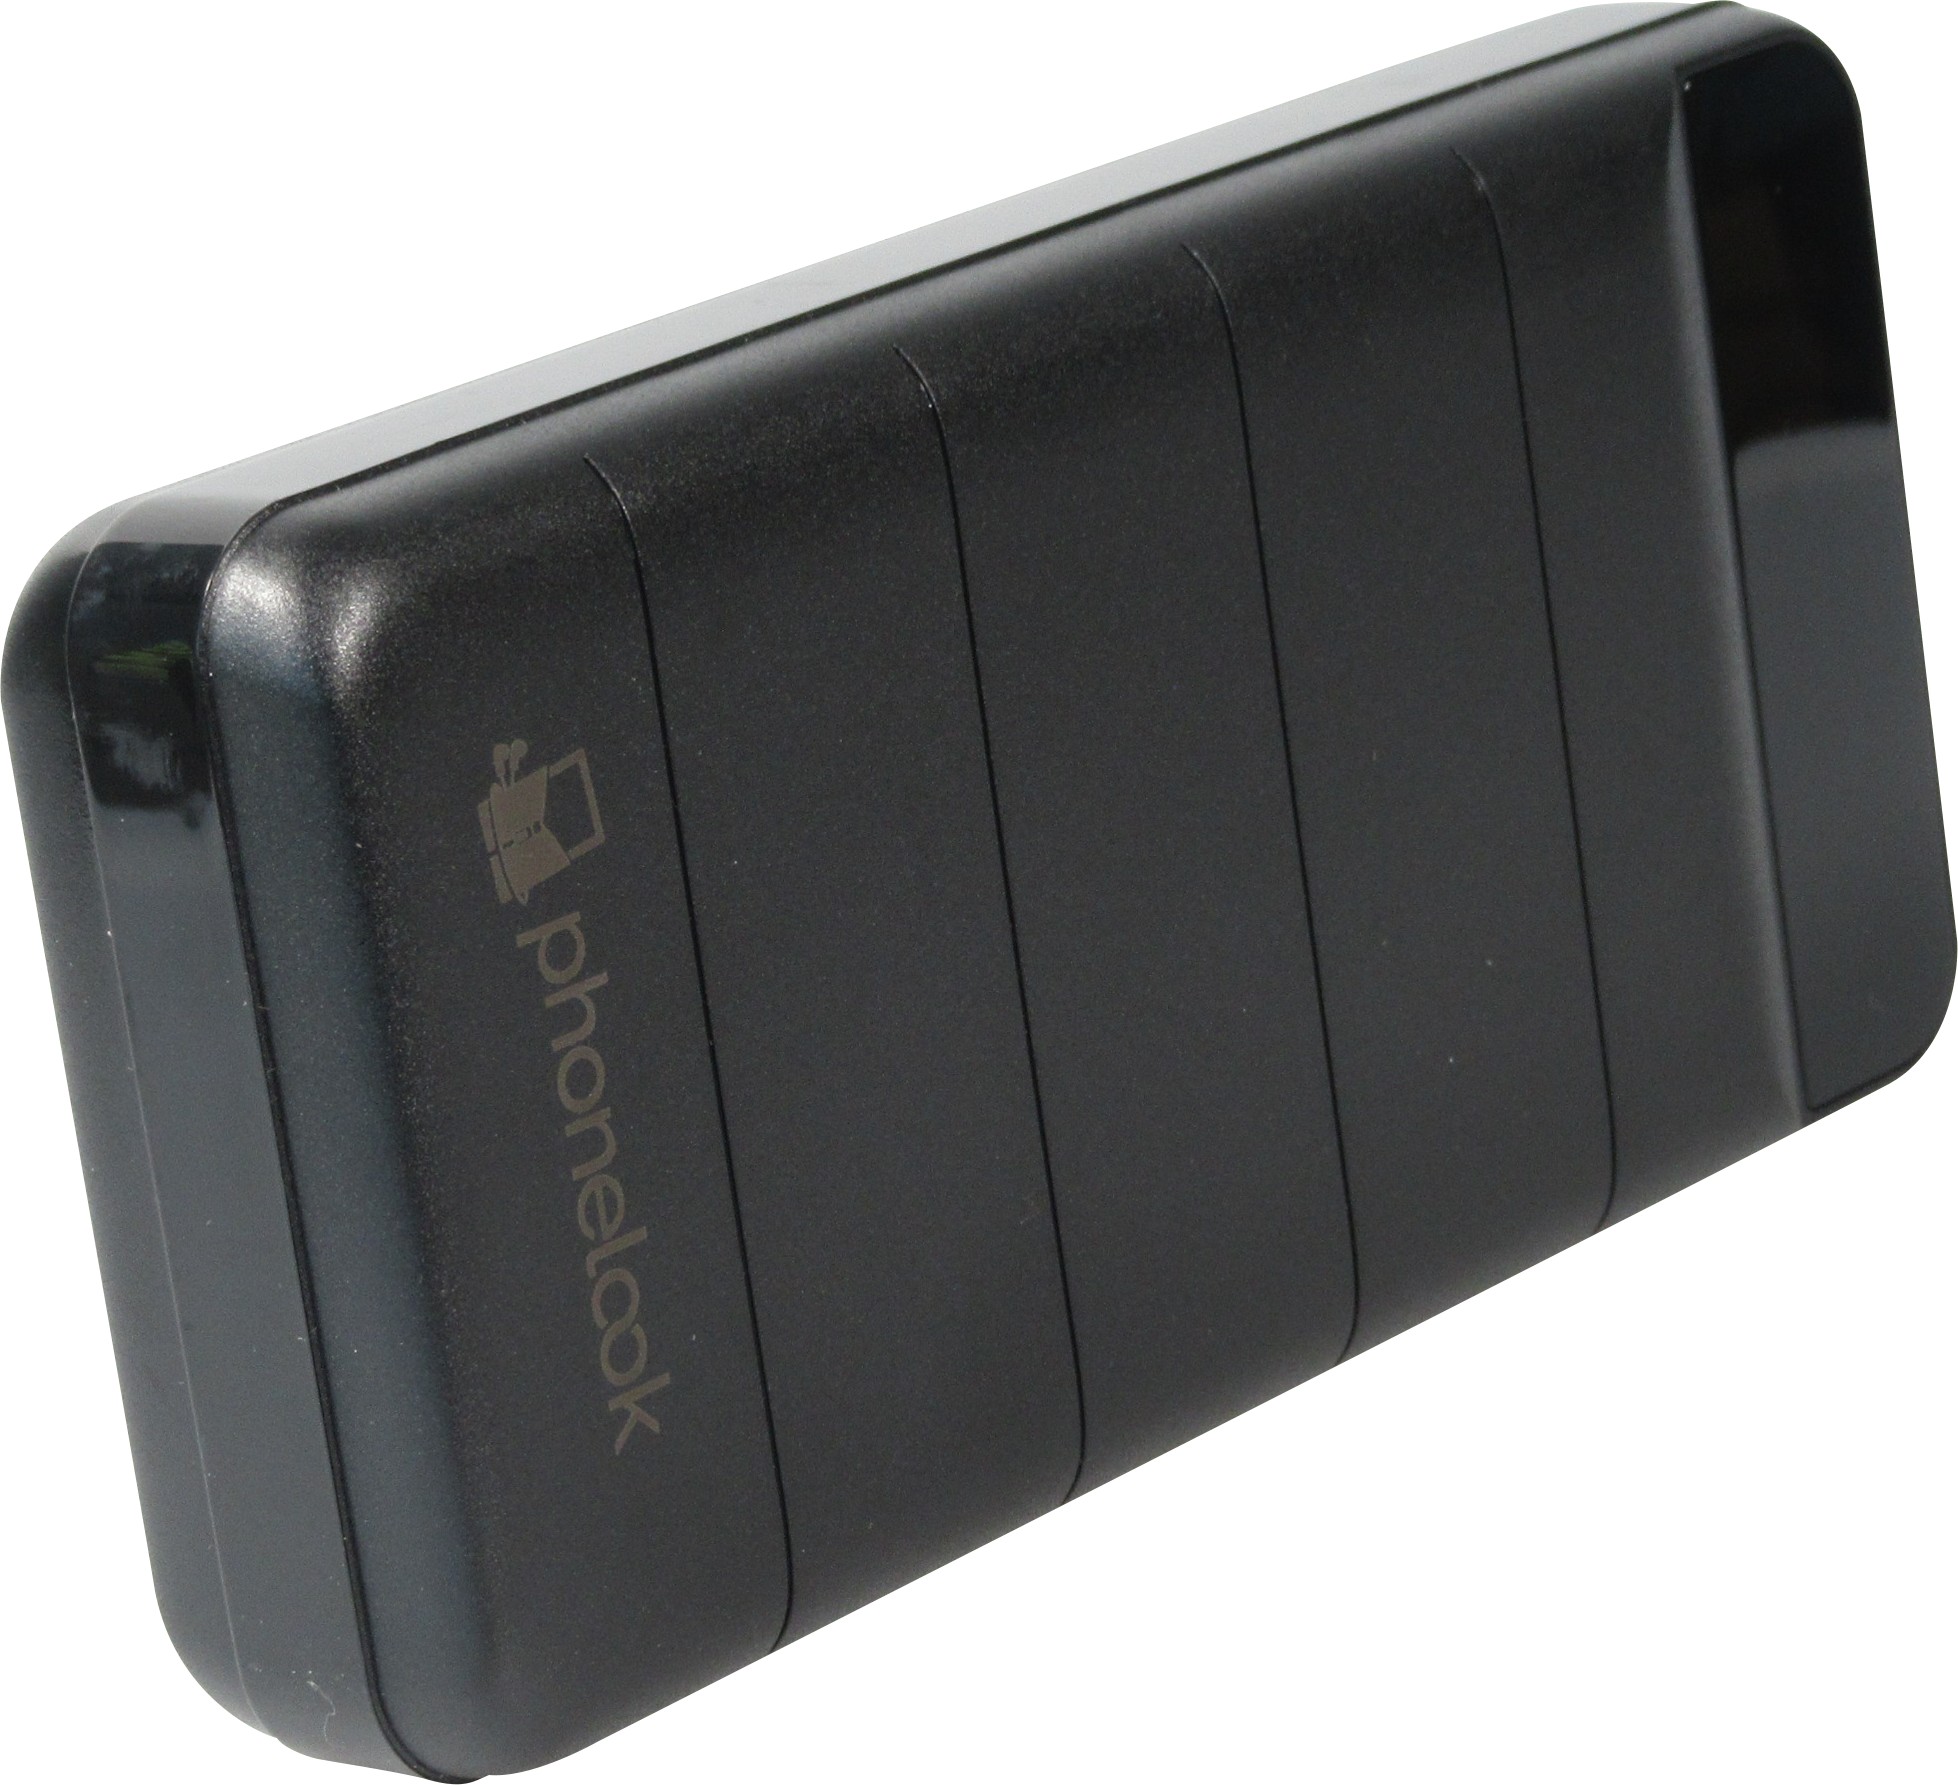 Power Bank batterie externe BLM-S30 50000mAh écran LED + double USB  PhoneLook - Noir - Acheter sur PhoneLook